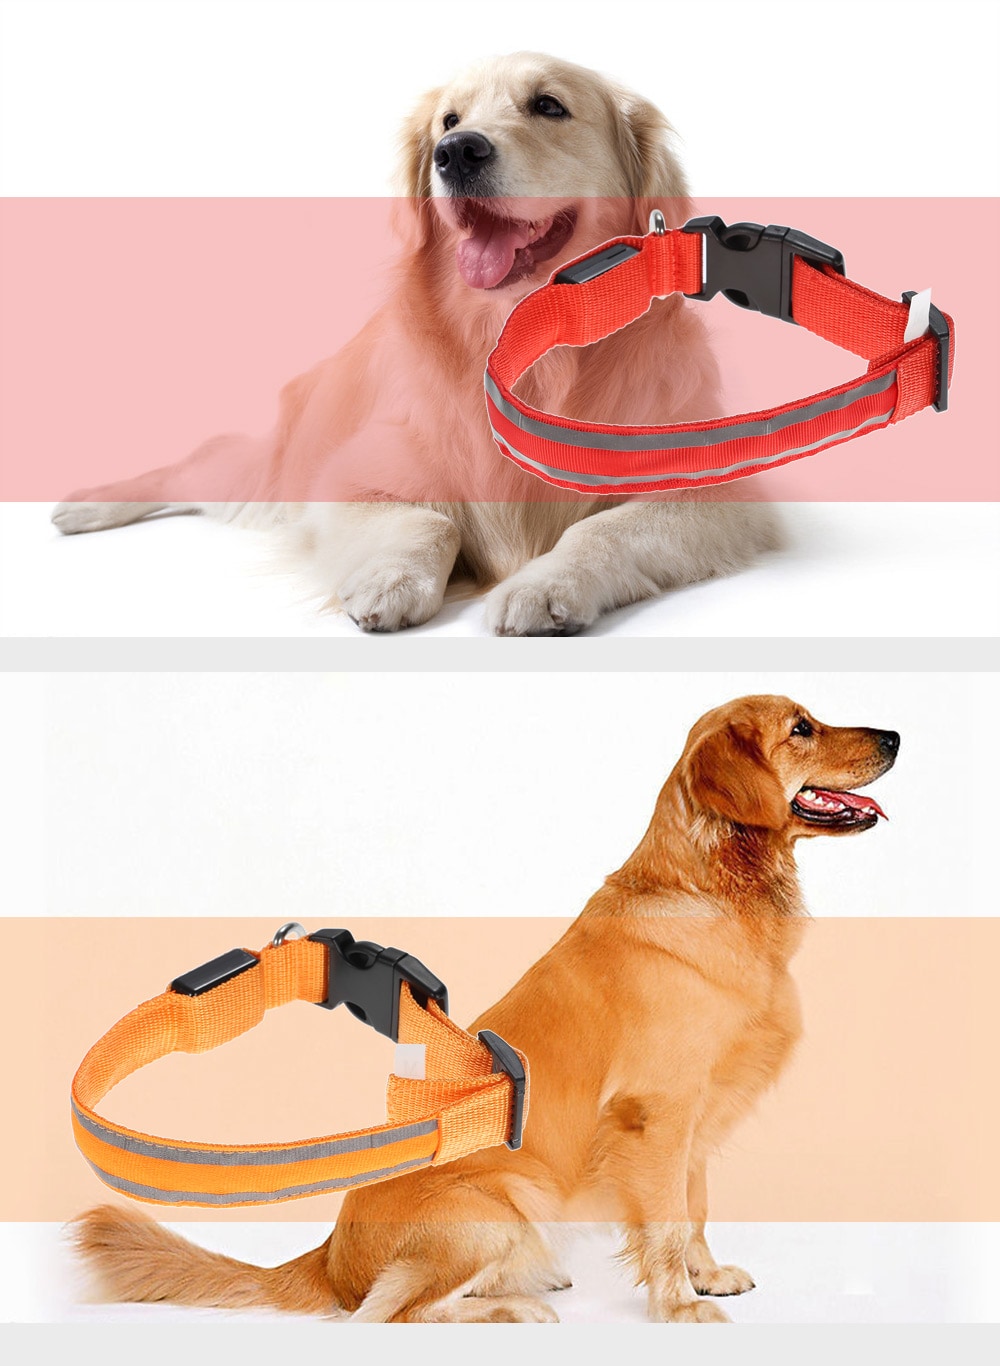 Yeshold Flashing LED Pet Dog Collar Safety Night Walking - L Code